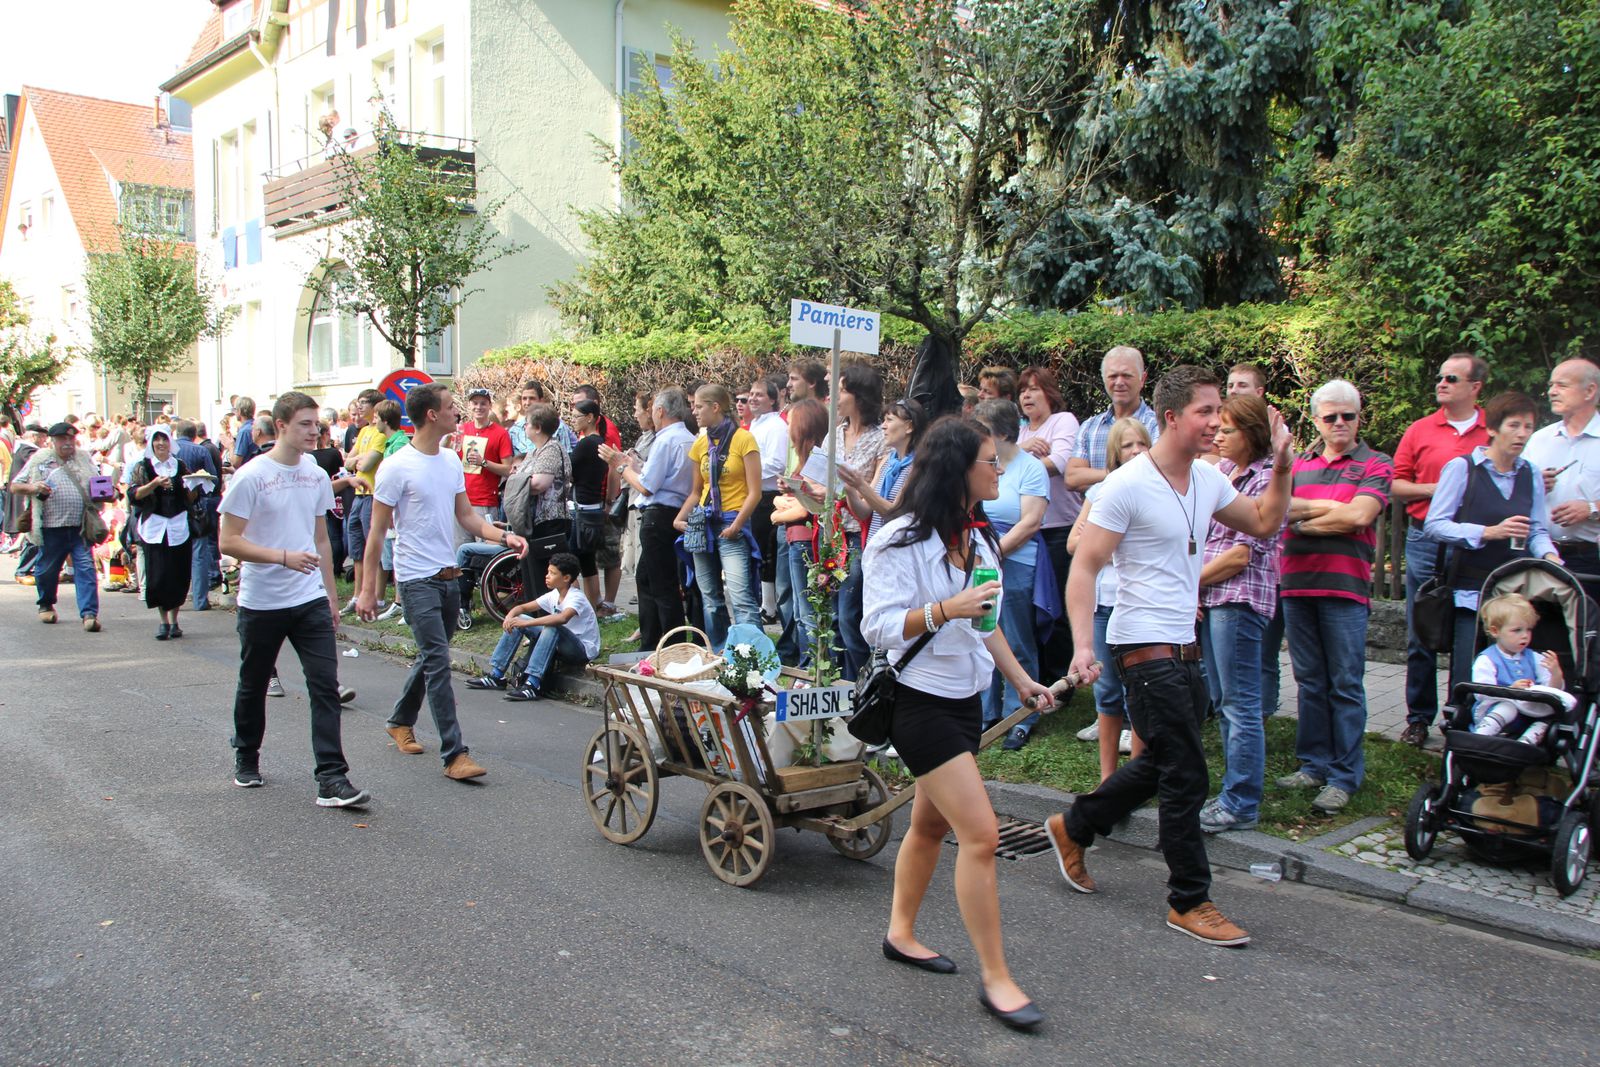 Jumelages-Amitiés aus Pamiers in Crailsheim, unterstützt von 44 Deutschen beim Volksfestumzug 2011